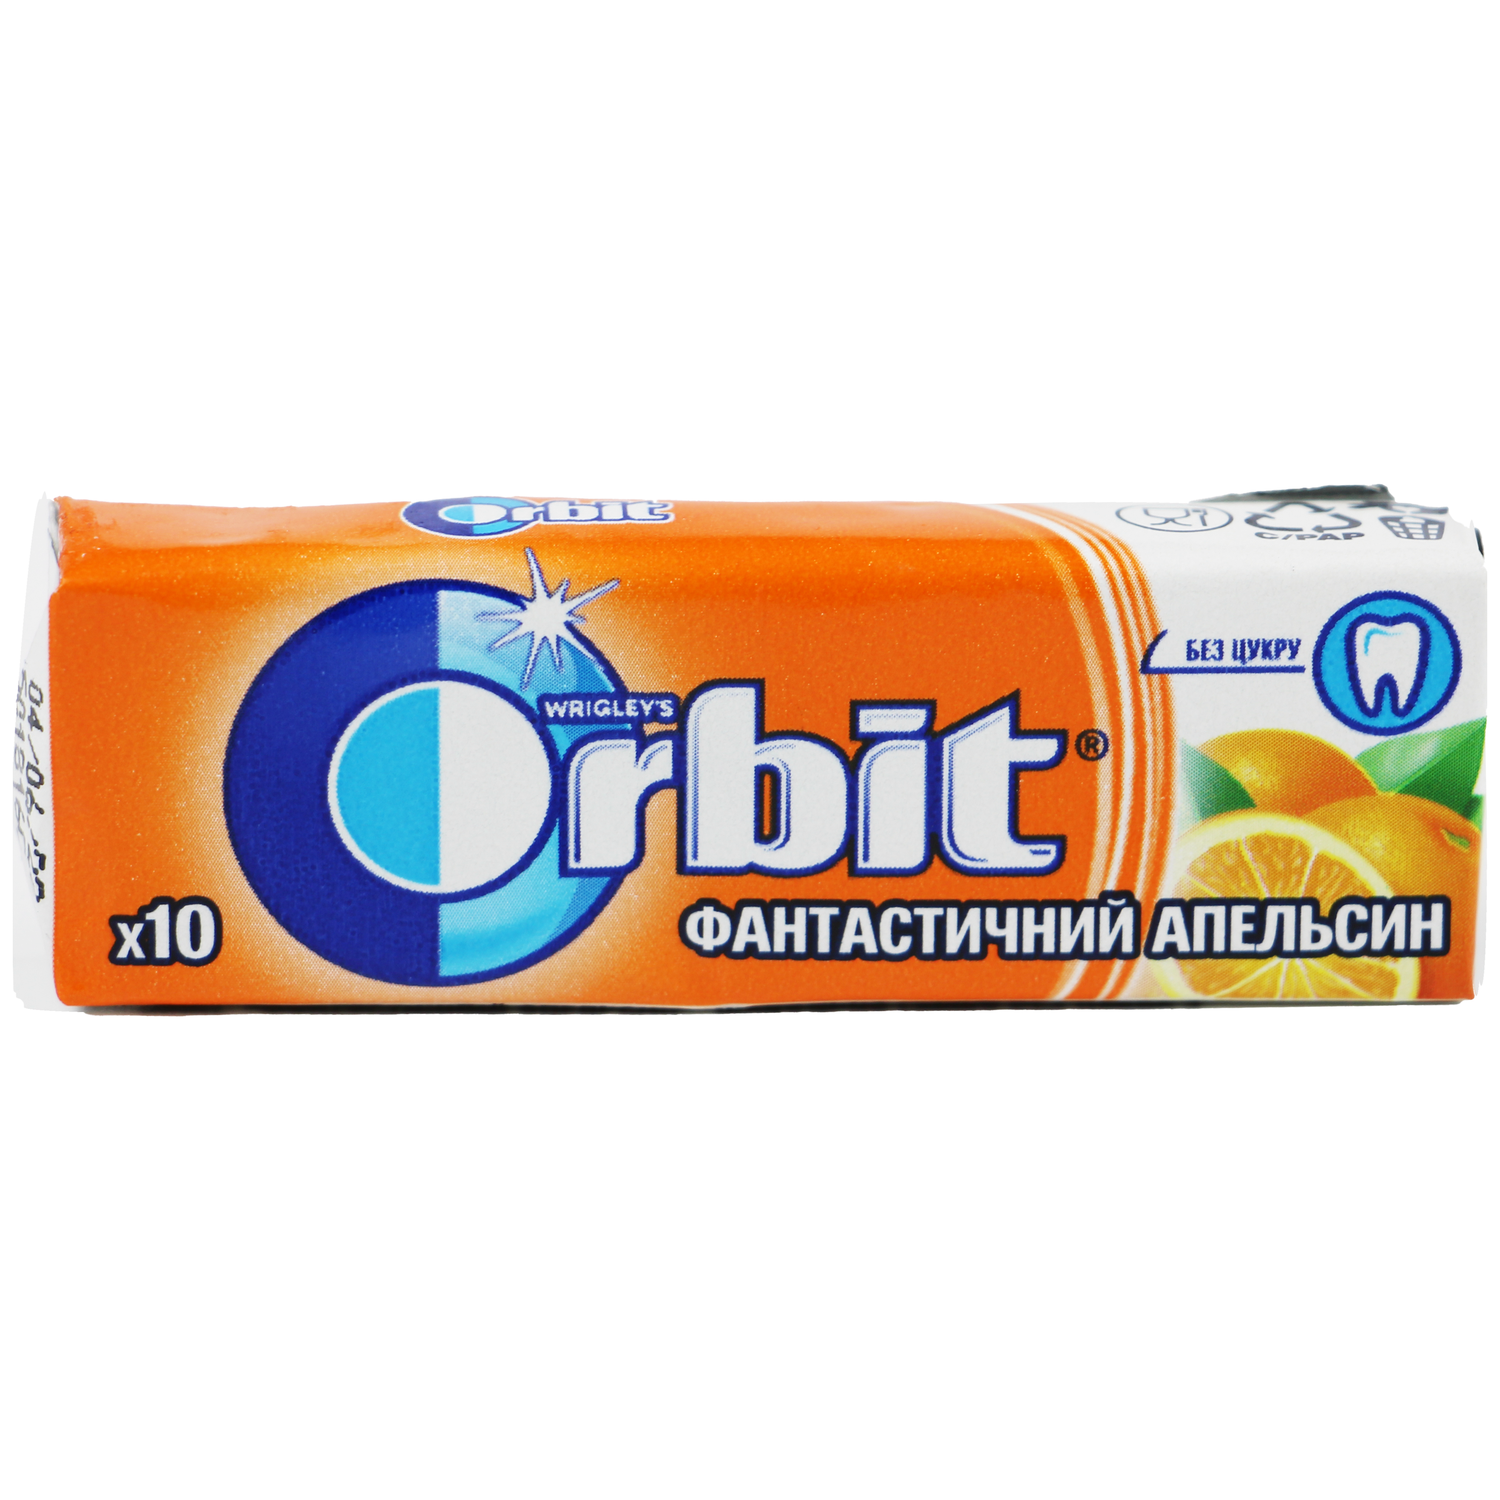 Orbit Fantastic Orange Chewing Gum 14g